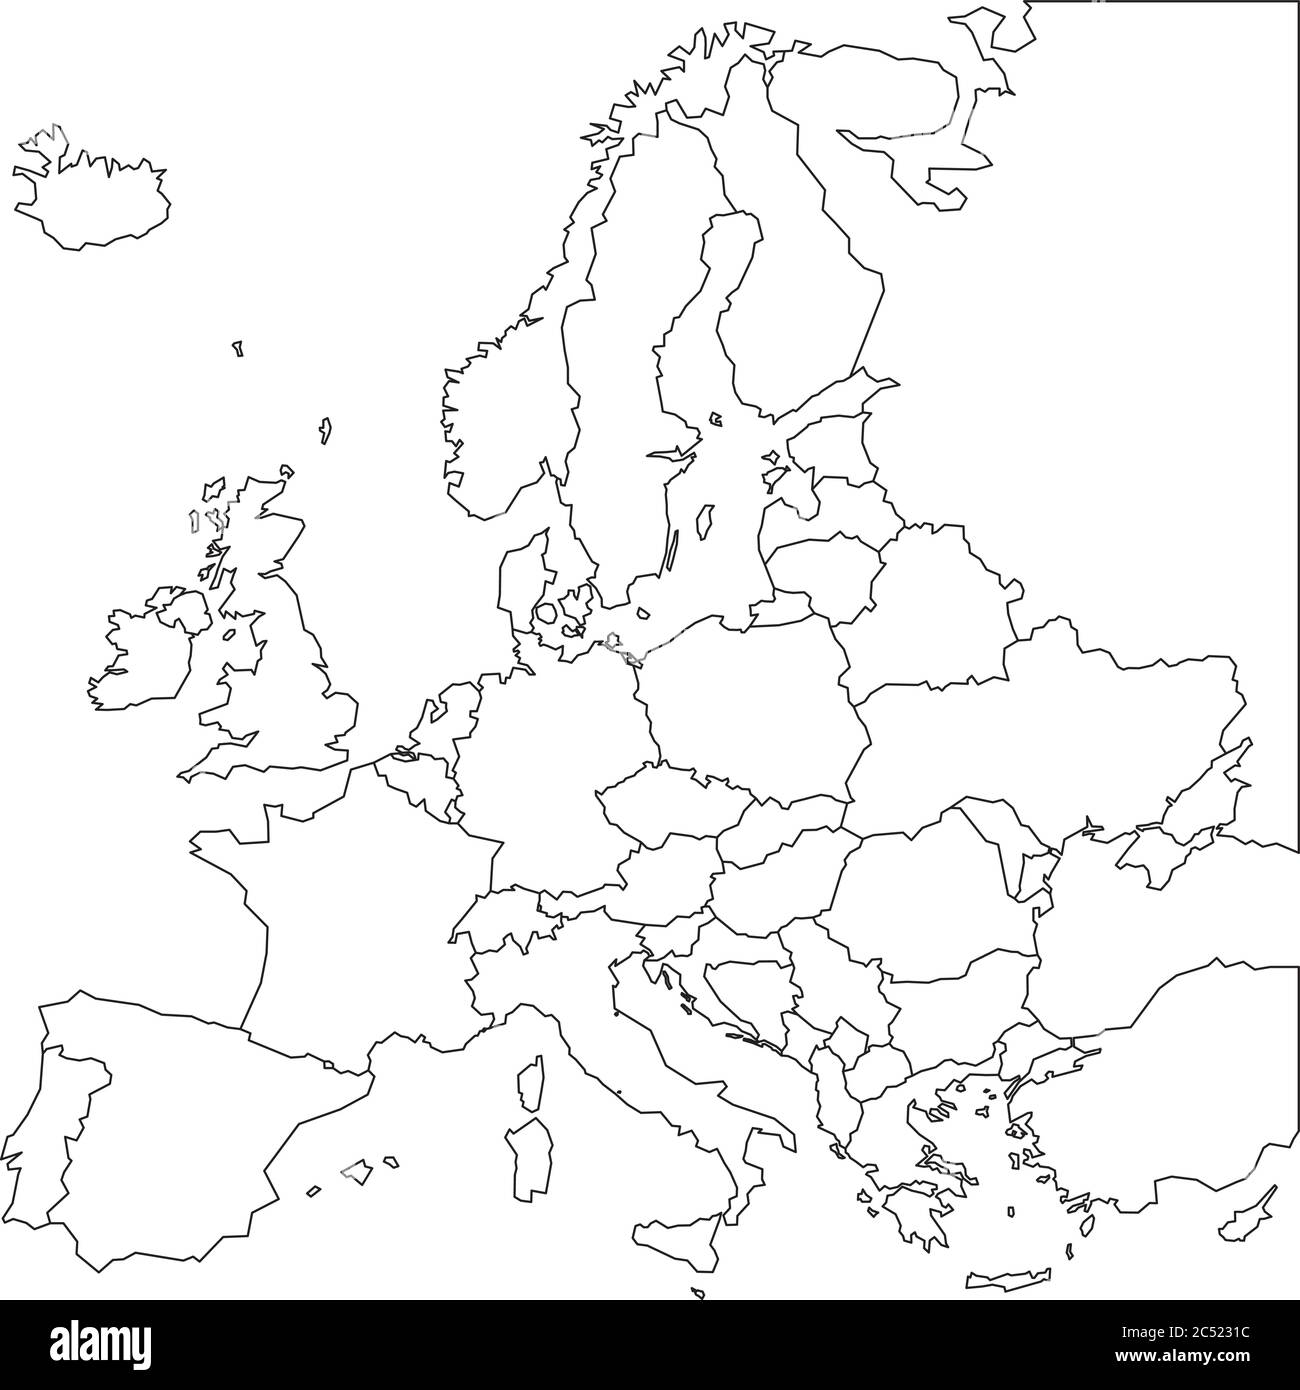 Mappa vuota dell'Europa. Mappa a reticolo semplificata dei bordi con linee nere. Illustrazione vettoriale. Illustrazione Vettoriale